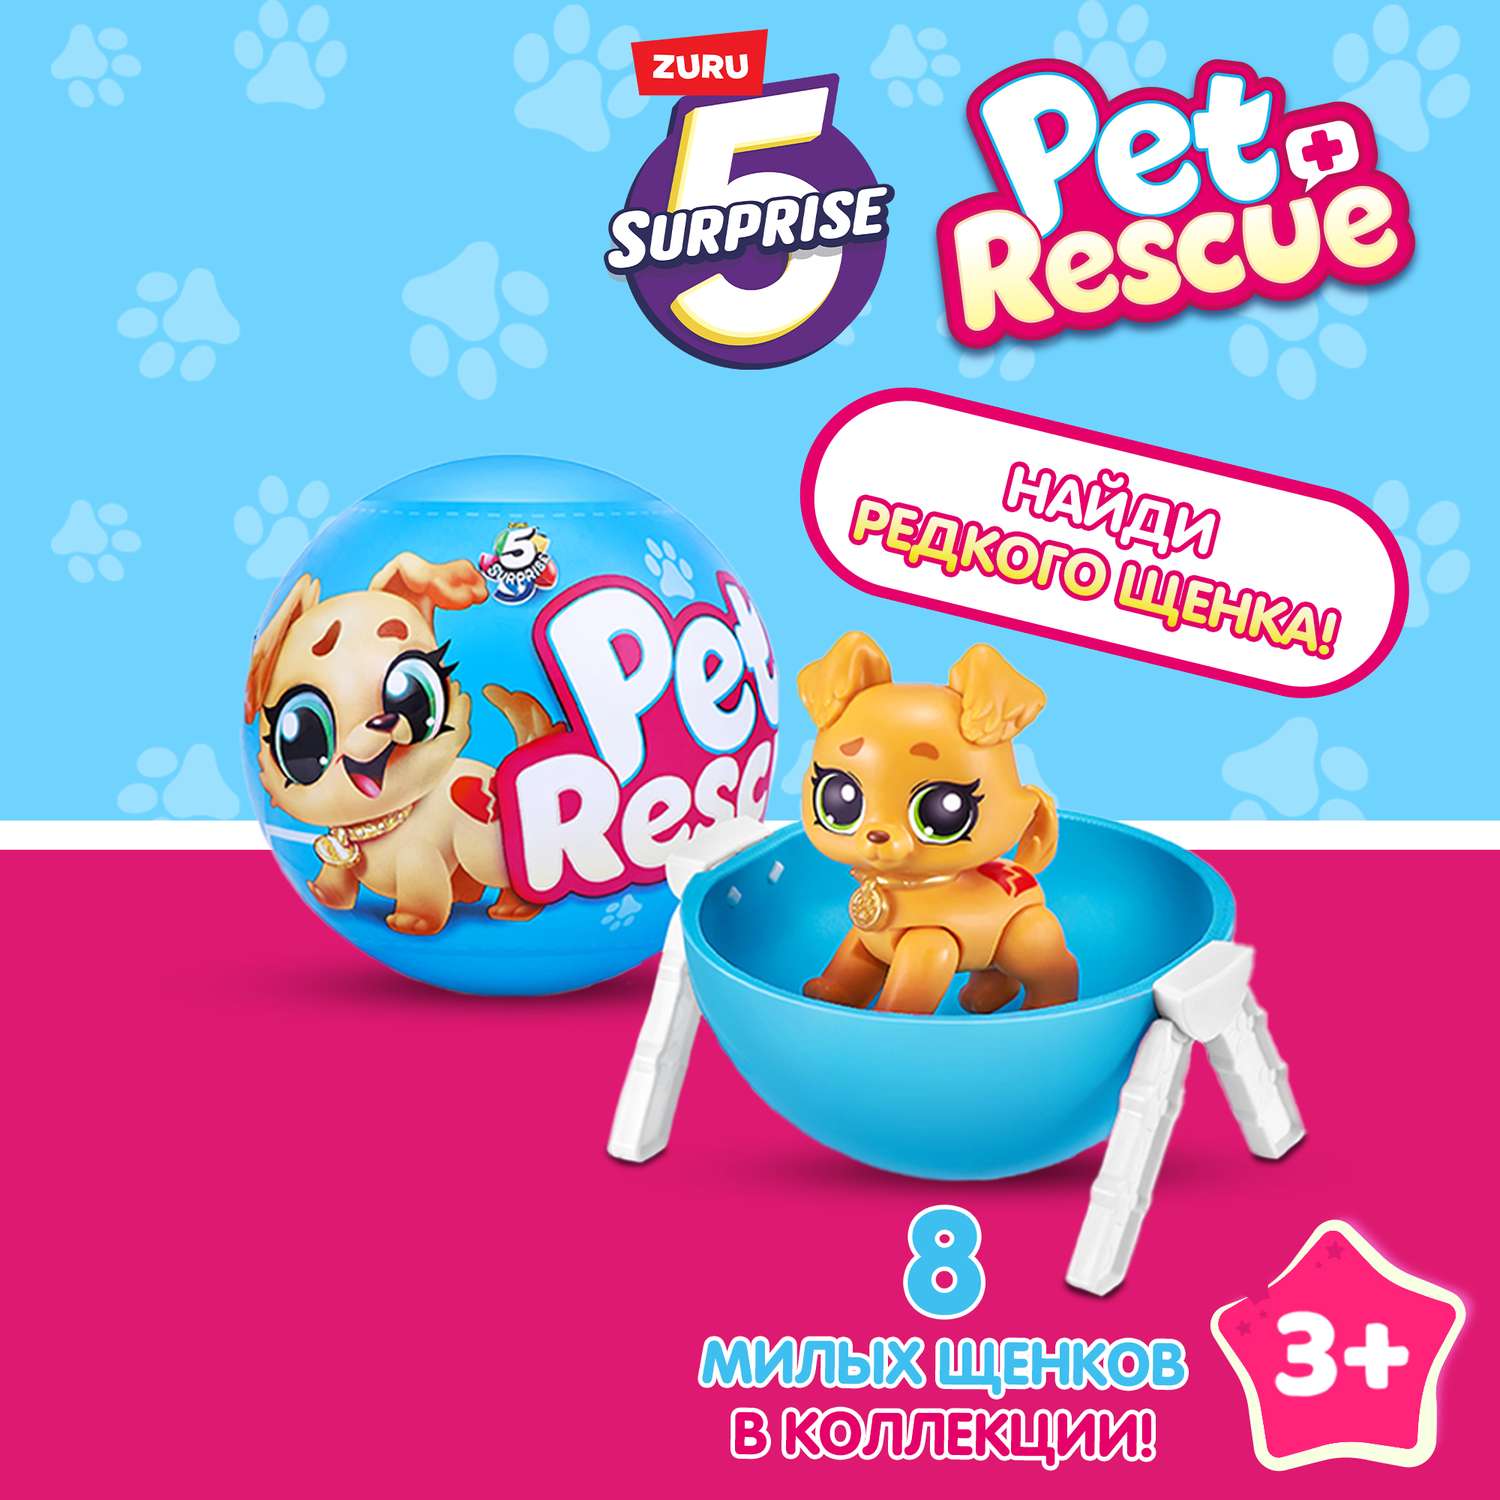 Игрушка Zuru 5 surprise Pet rescue Шар в непрозрачной упаковке (Сюрприз) 77265GQ1 - фото 1